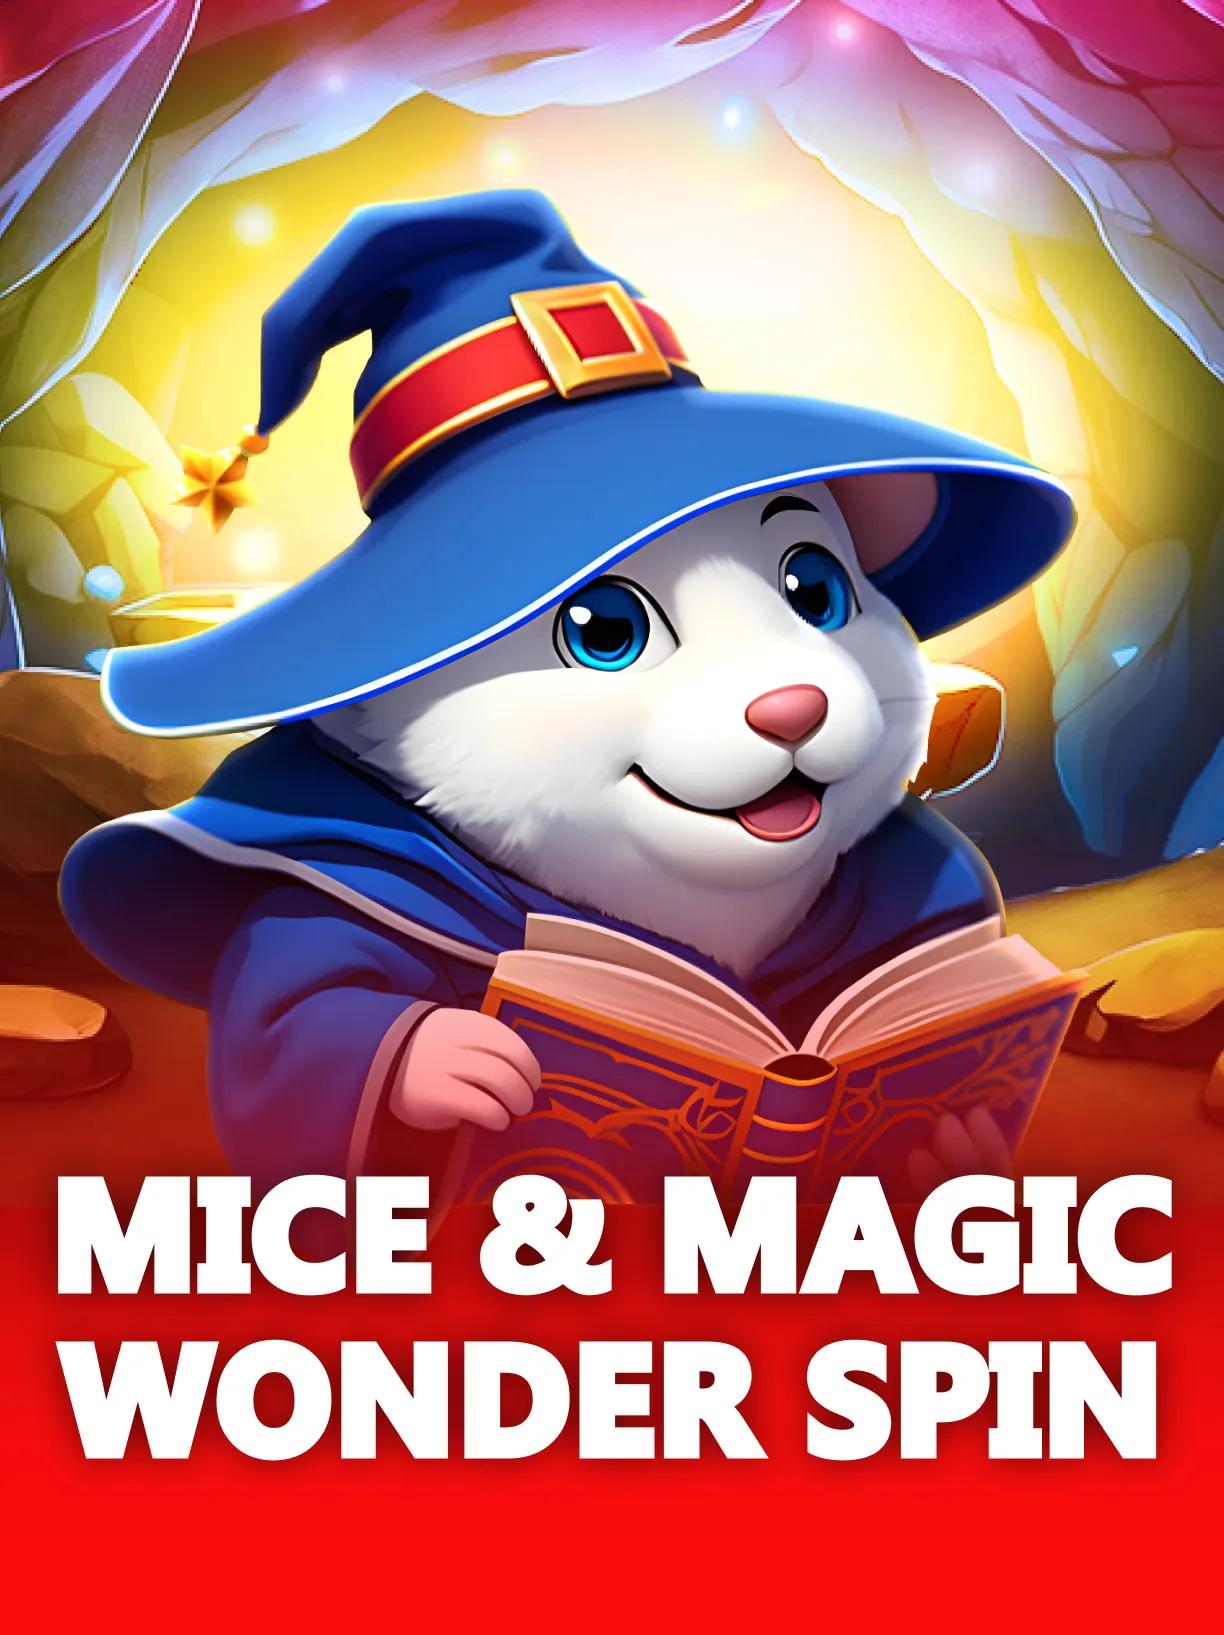 Mice&Magic